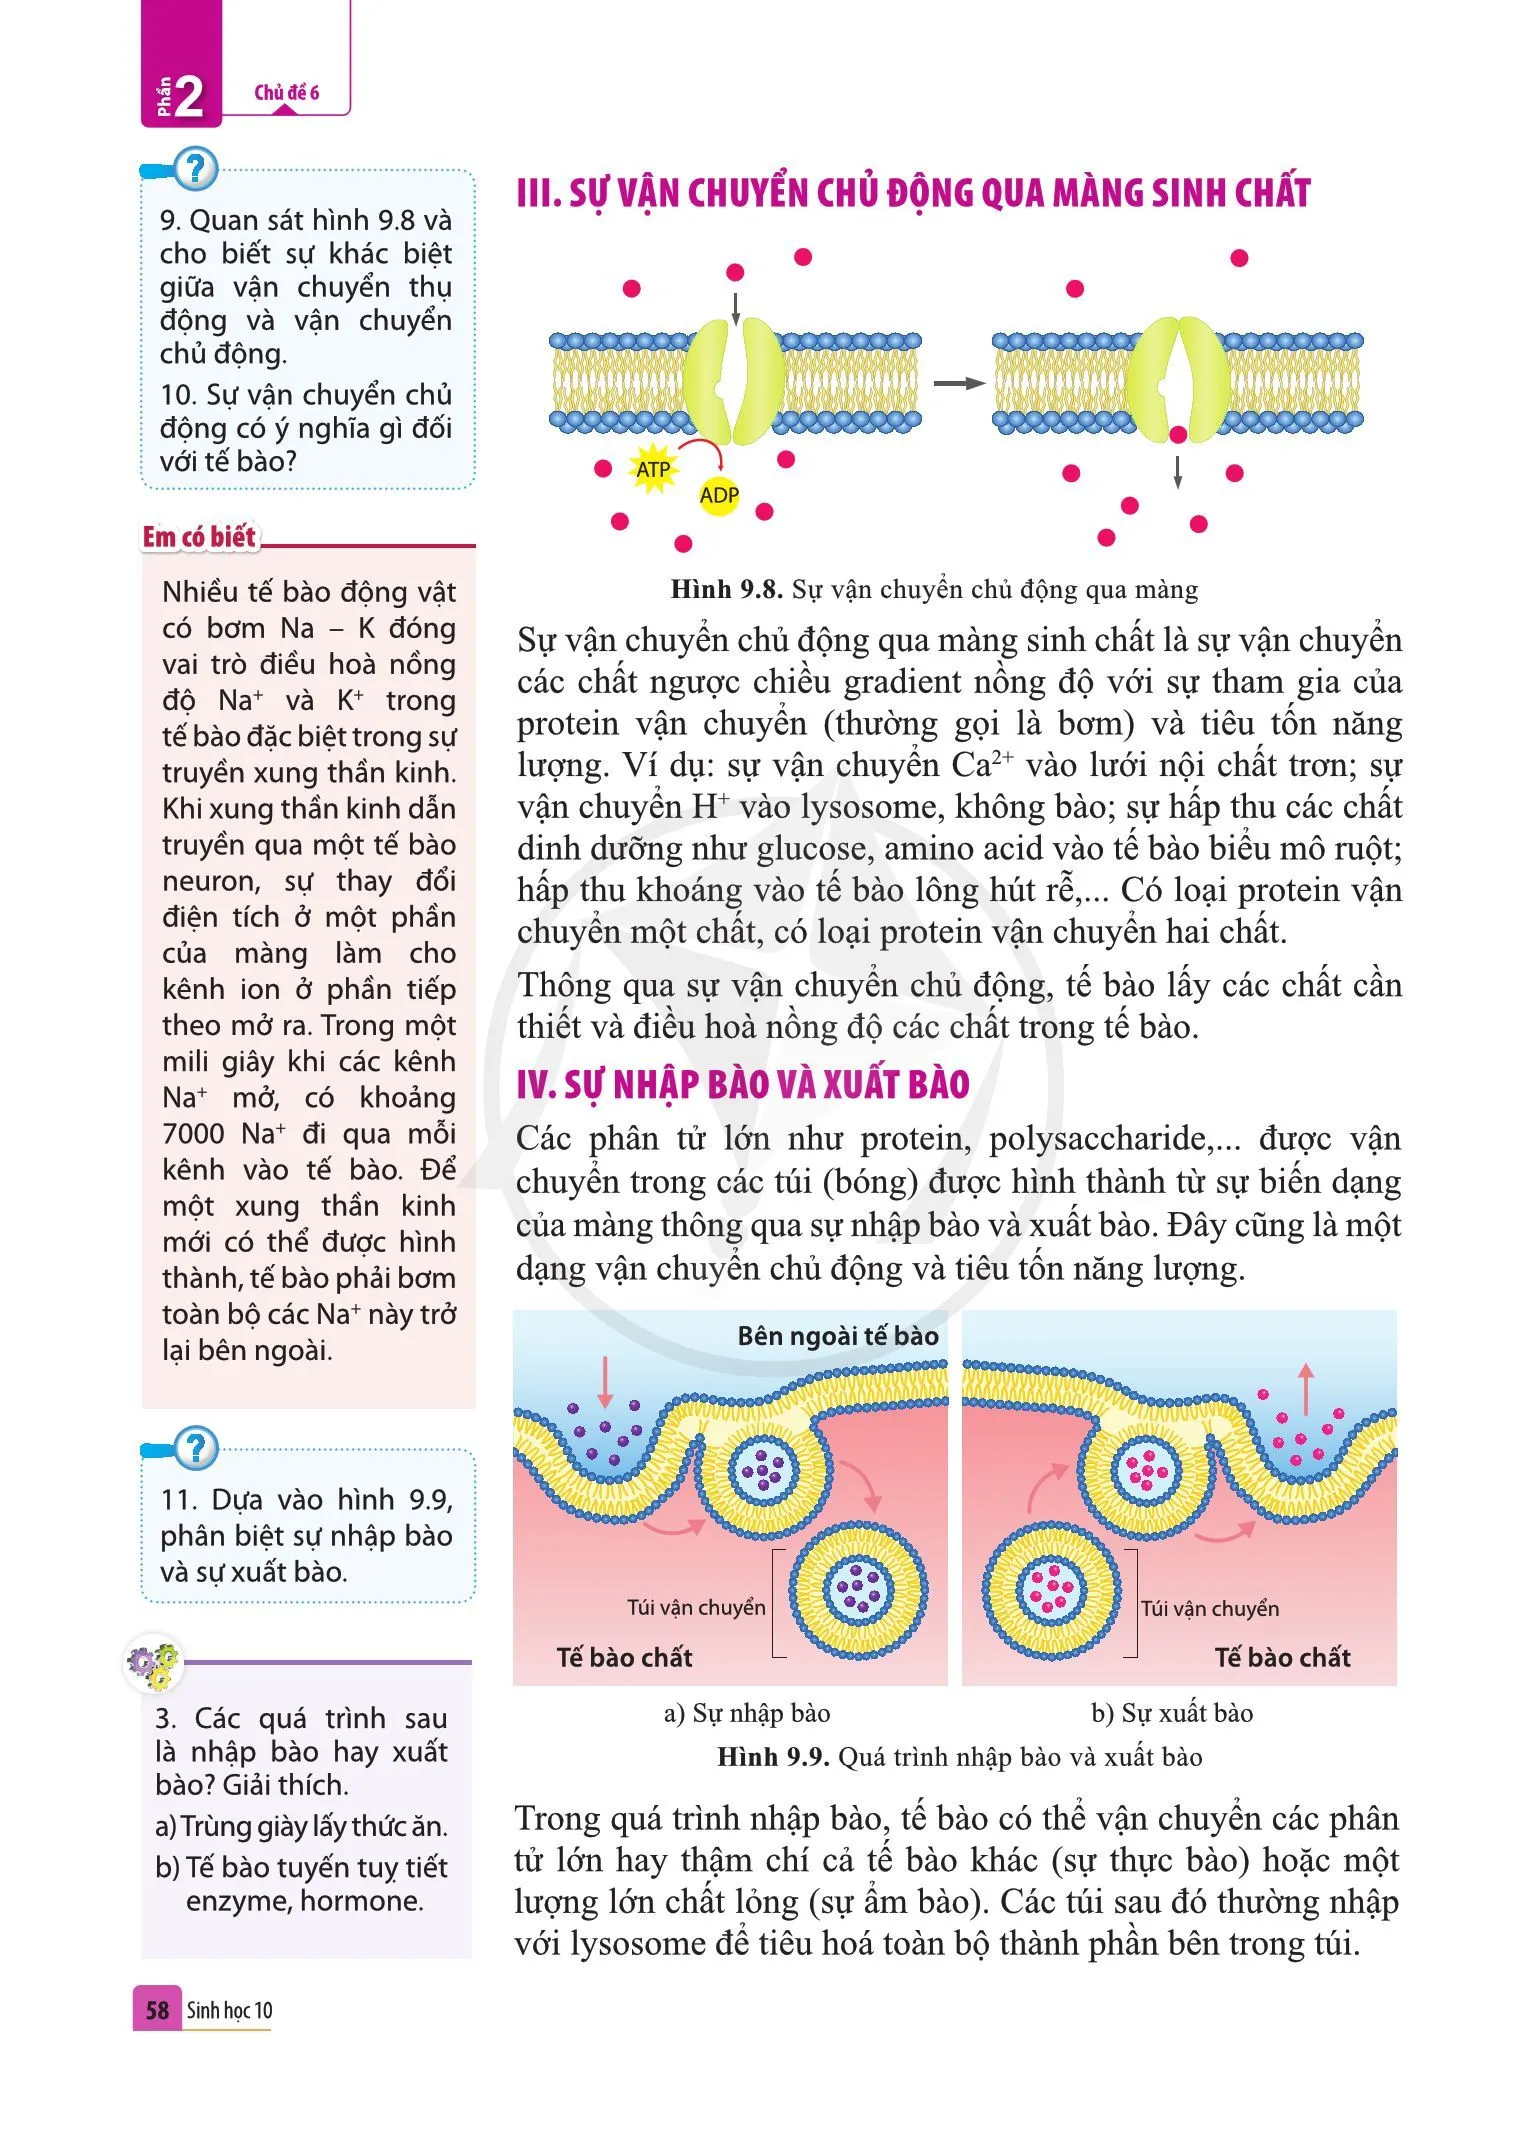 Bài 9. Trao đổi chất qua màng sinh chất